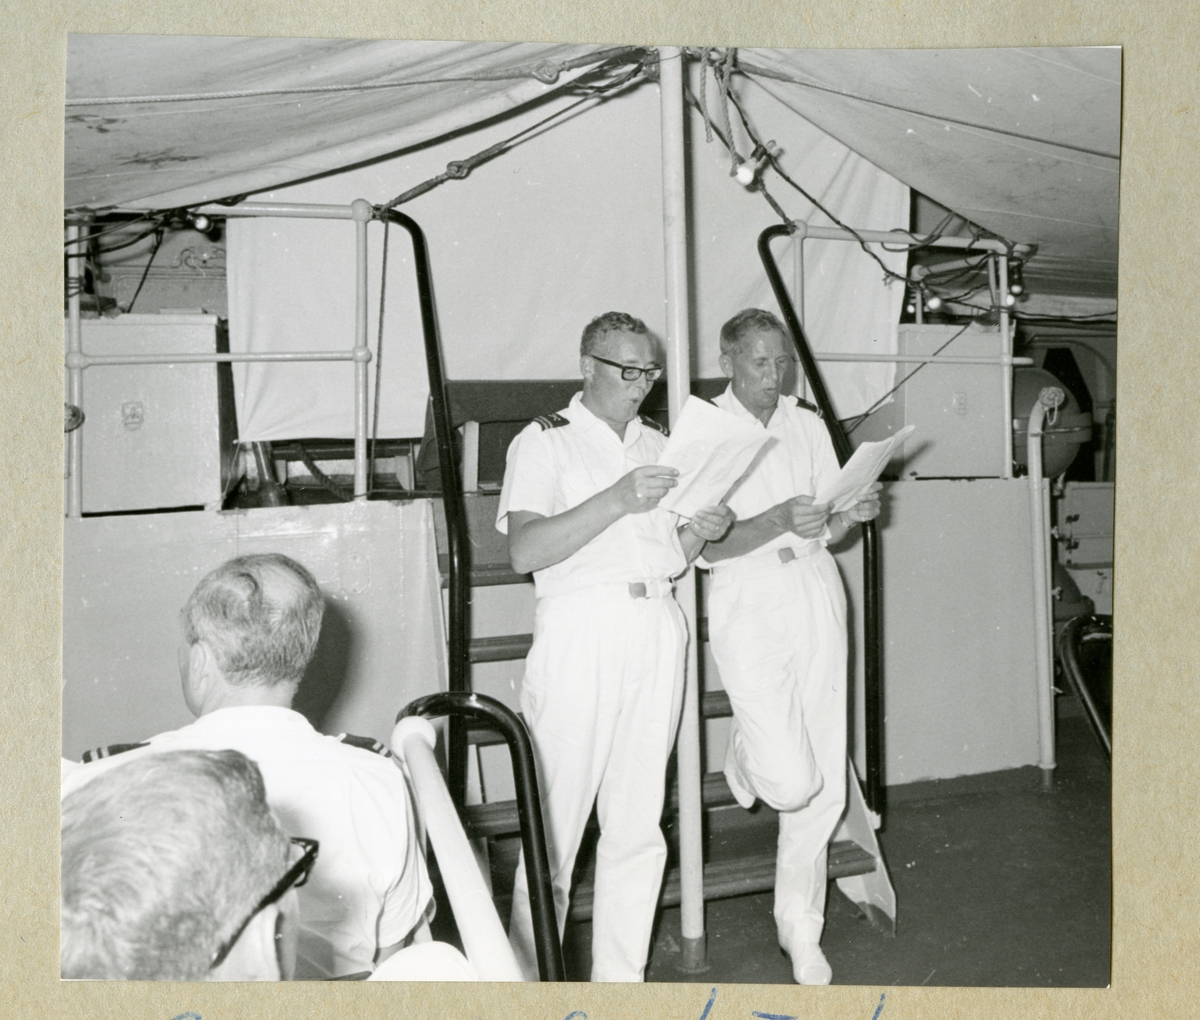 Bilden föreställer två uniformsklädda besättningsmän som läser i papper och spexar inför publik på minfartyget Älvsnabbens däck. Bilden är tagen under fartygets långresa 1966-1967.